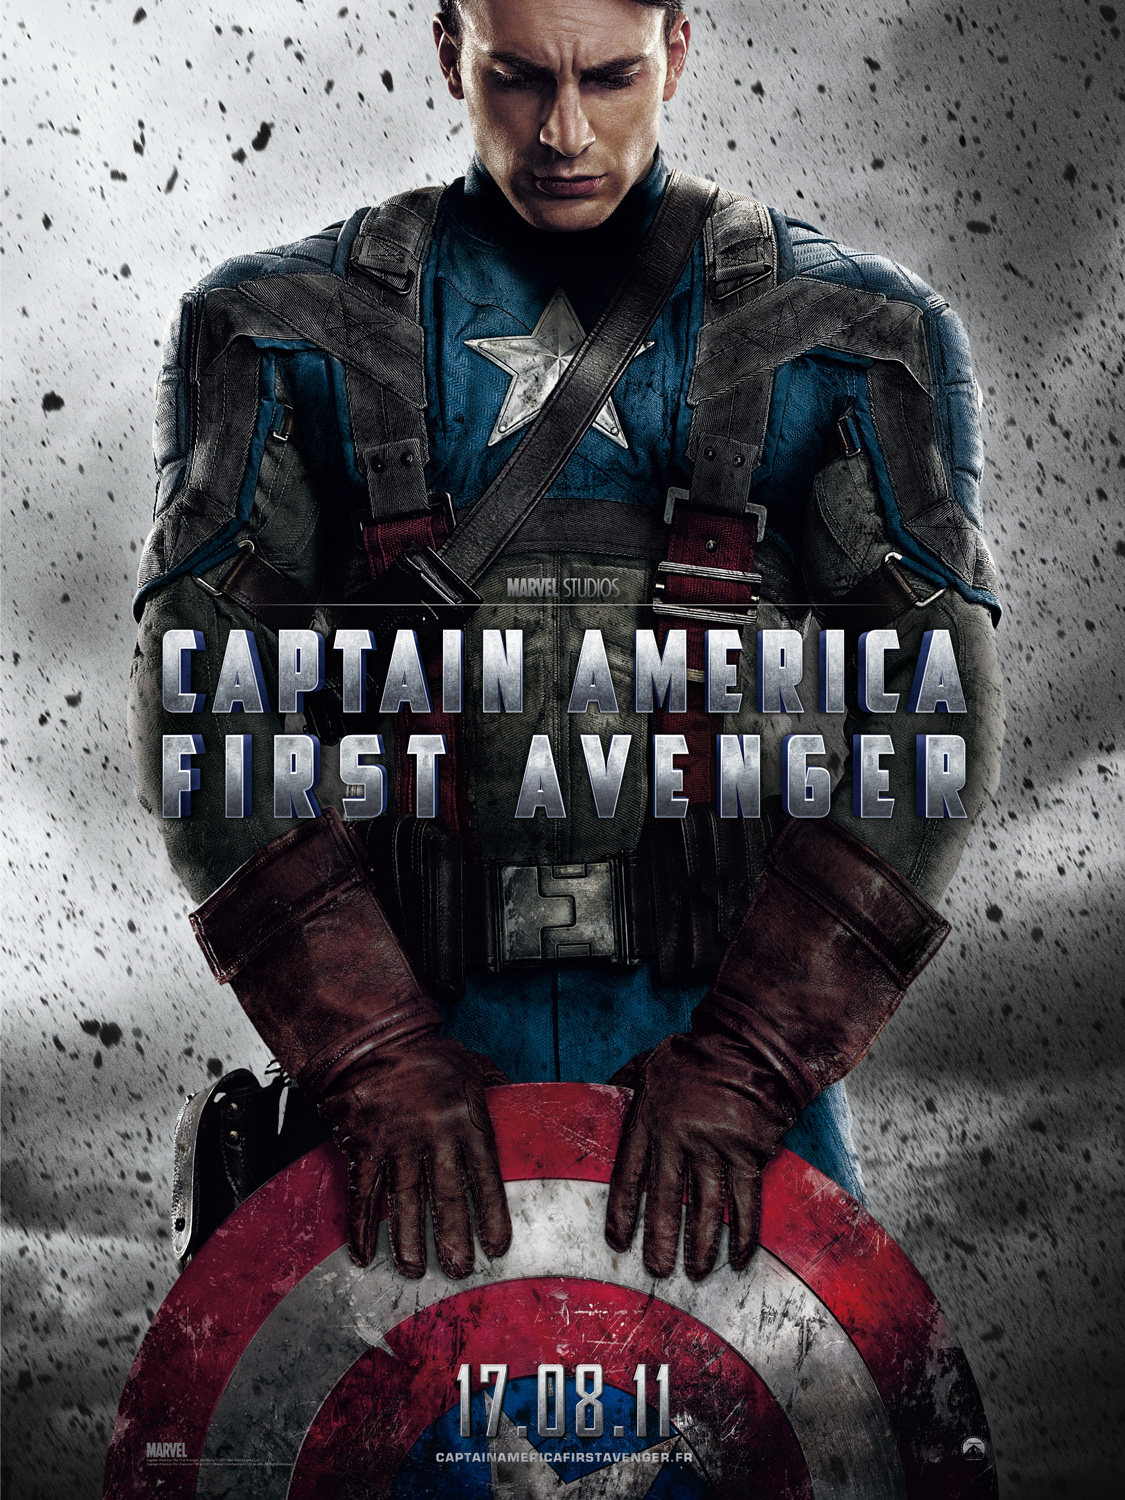 http://nosvisionsducinema.files.wordpress.com/2011/07/captain-america-first-avenger-affiche-teaser-france.jpg